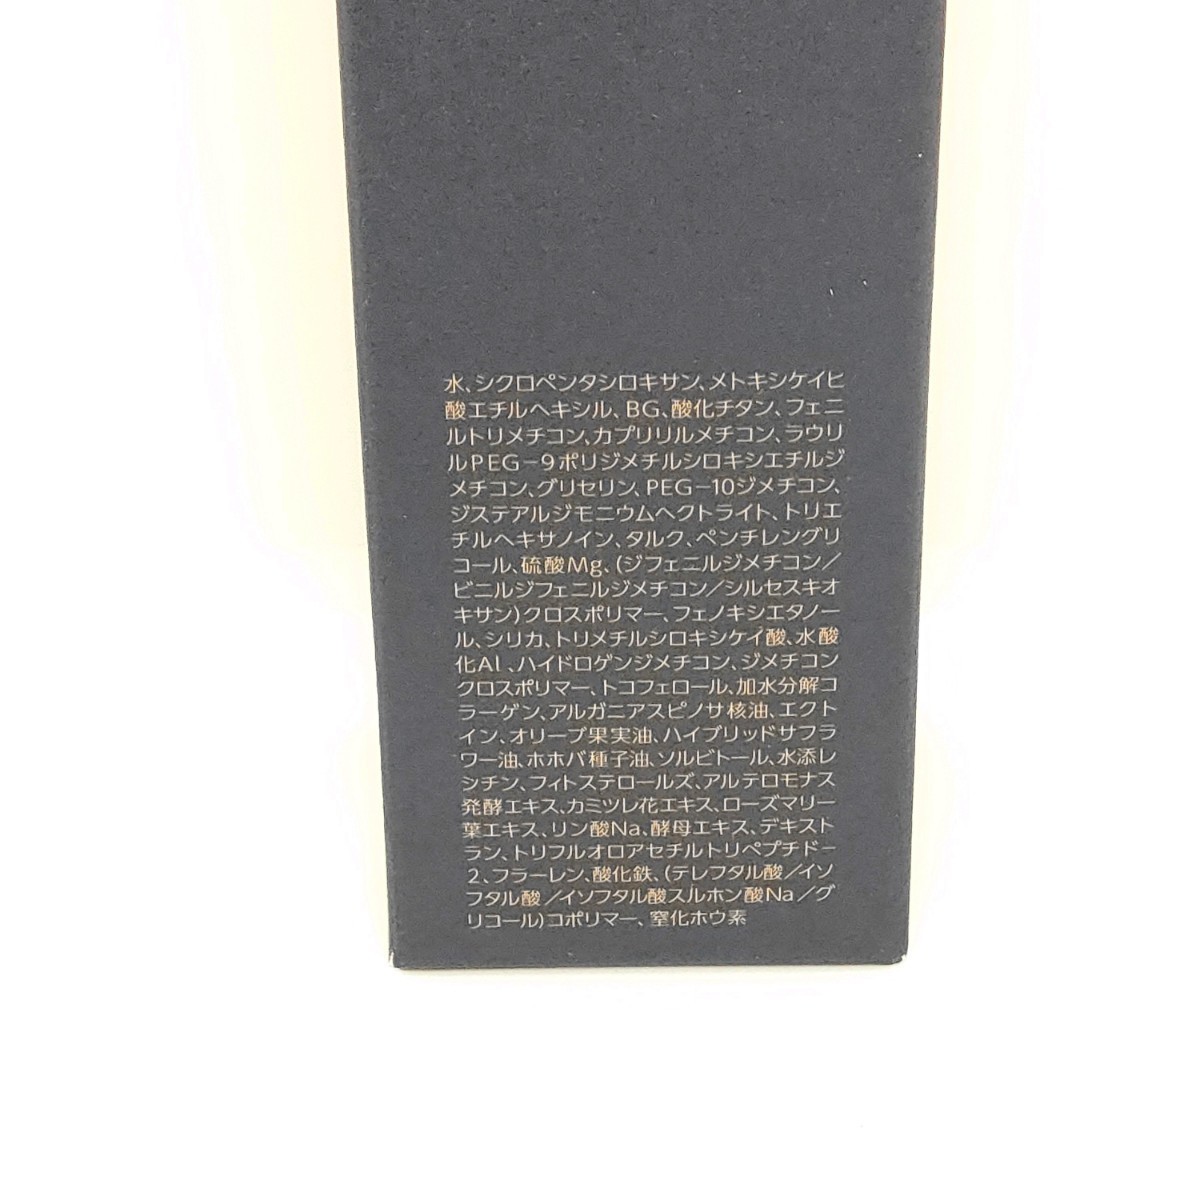 * новый товар не использовался * сделано в Японии TERNARYta-na Lee изменение цвета свет Touch основа 1 шт. pala Ben свободный алкоголь свободный UV вентилятор te